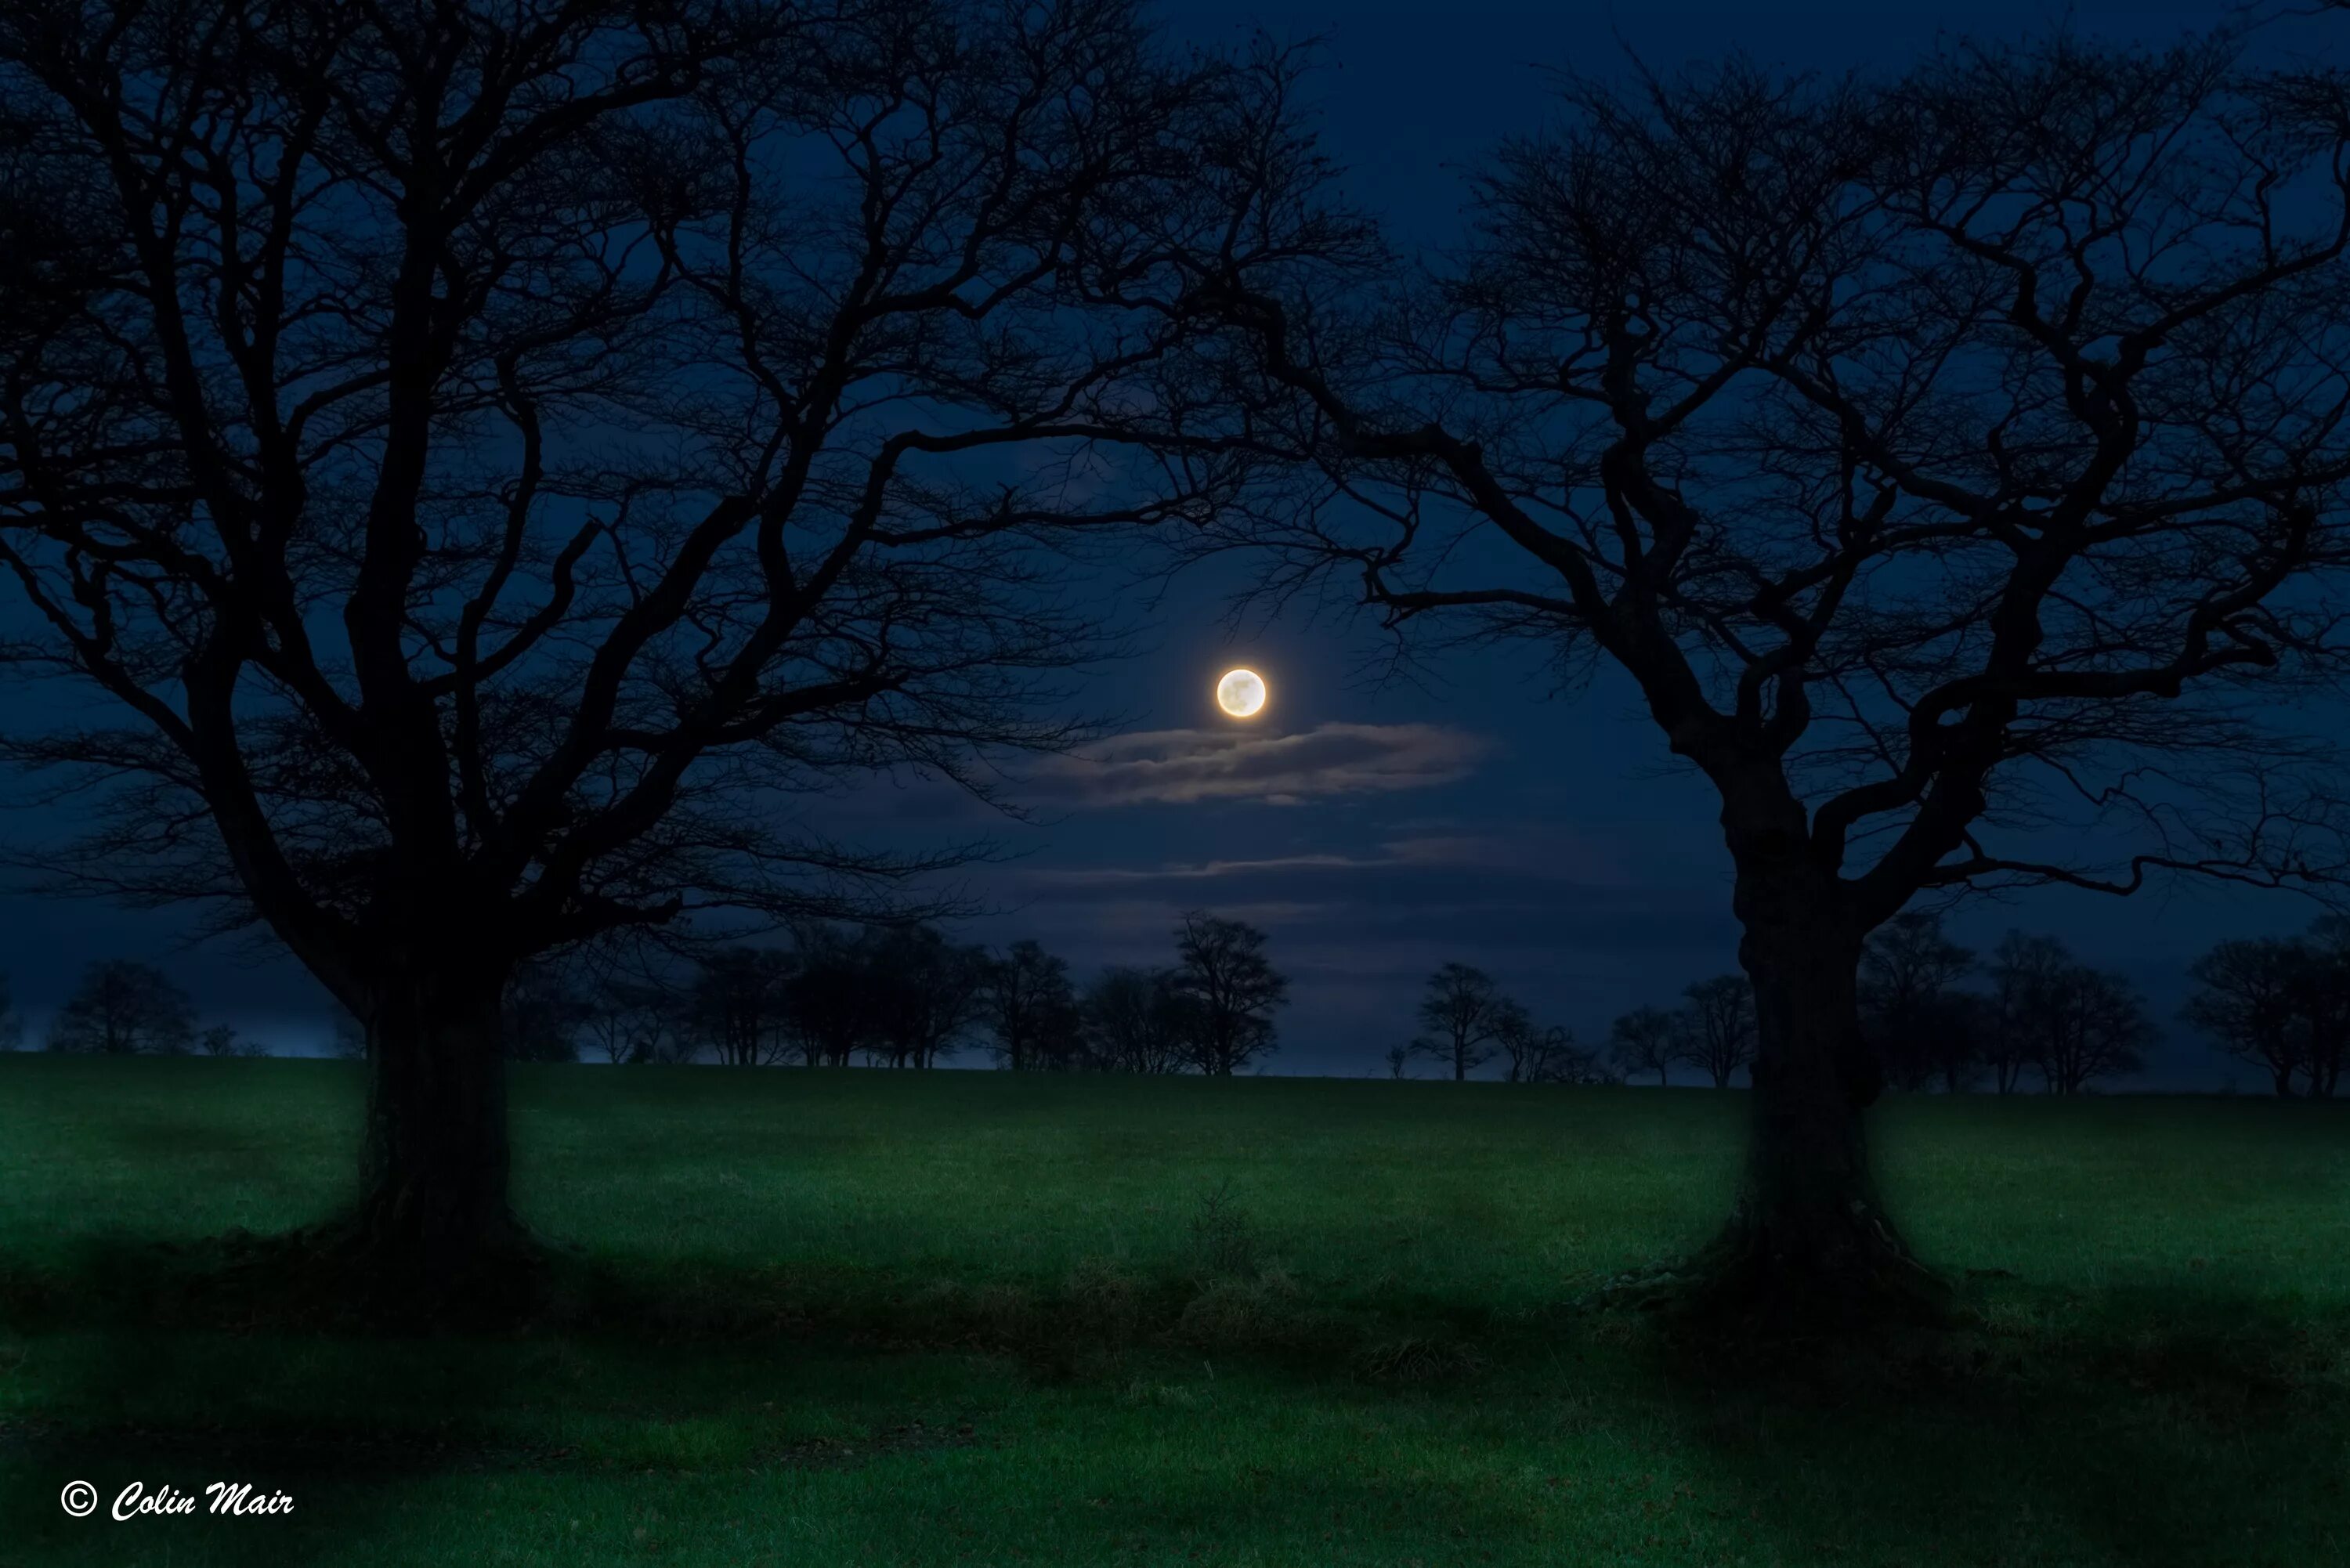 Лес Освещенный луной. Деревья в свете Луны. Тёмный чпонский лес освещаюшей луно. Дерево освещенное луной